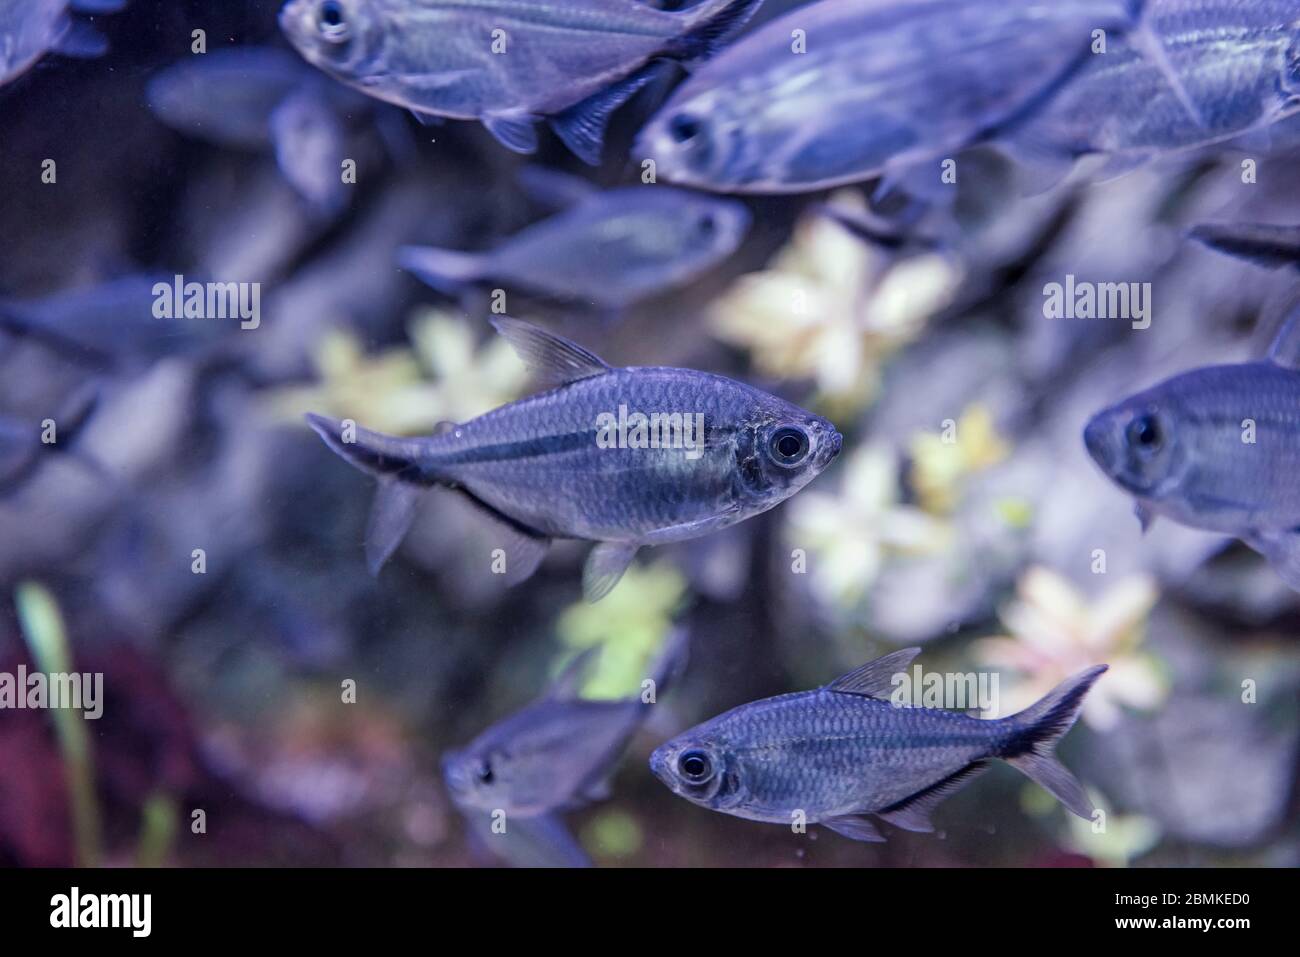 Immagine di acquario tropicale di pesci, tetra fantasma nero Foto Stock